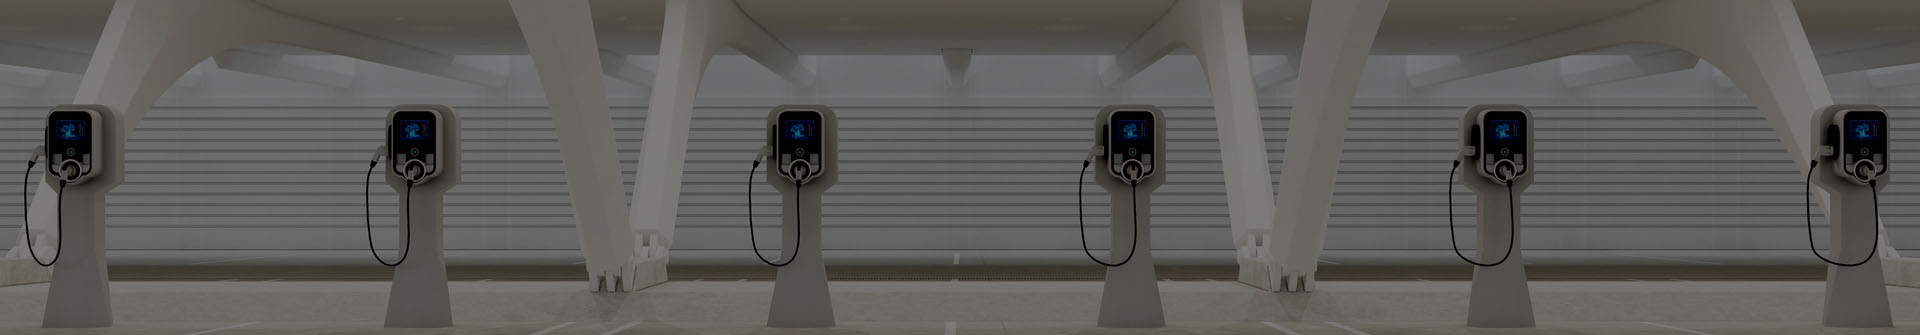 APP Kontroll 16A EV Wallbox Elektresch Ladegeräter fir Elektresch Auto